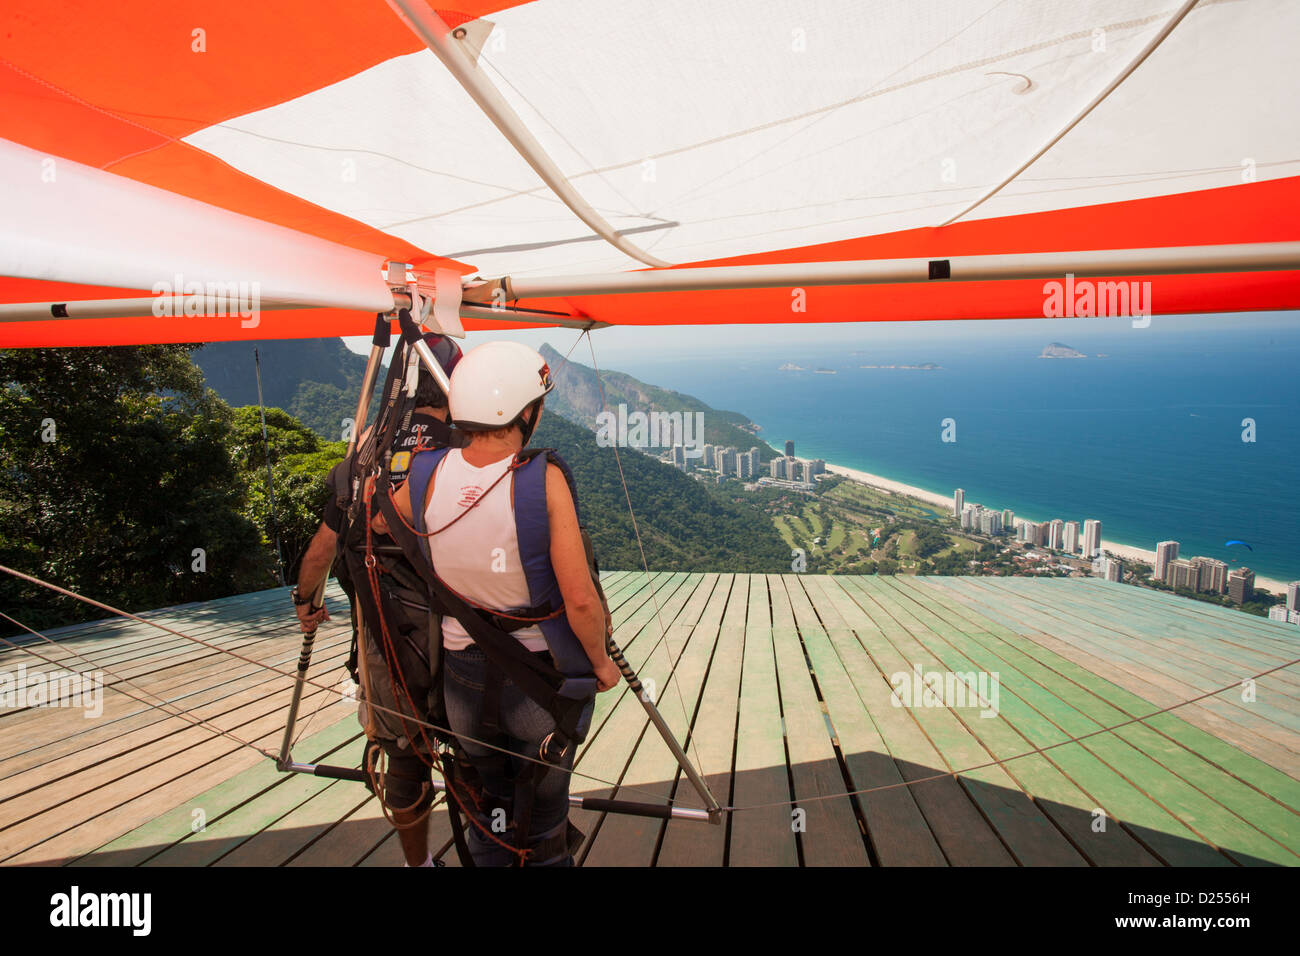 Brésil, Rio, forêt de Tijuca, deltaplane en tandem se préparant au décollage de Pedra Bonita au-dessus de la plage de Sao Conrado. Vue sur la plage et l'océan Atlantique Banque D'Images